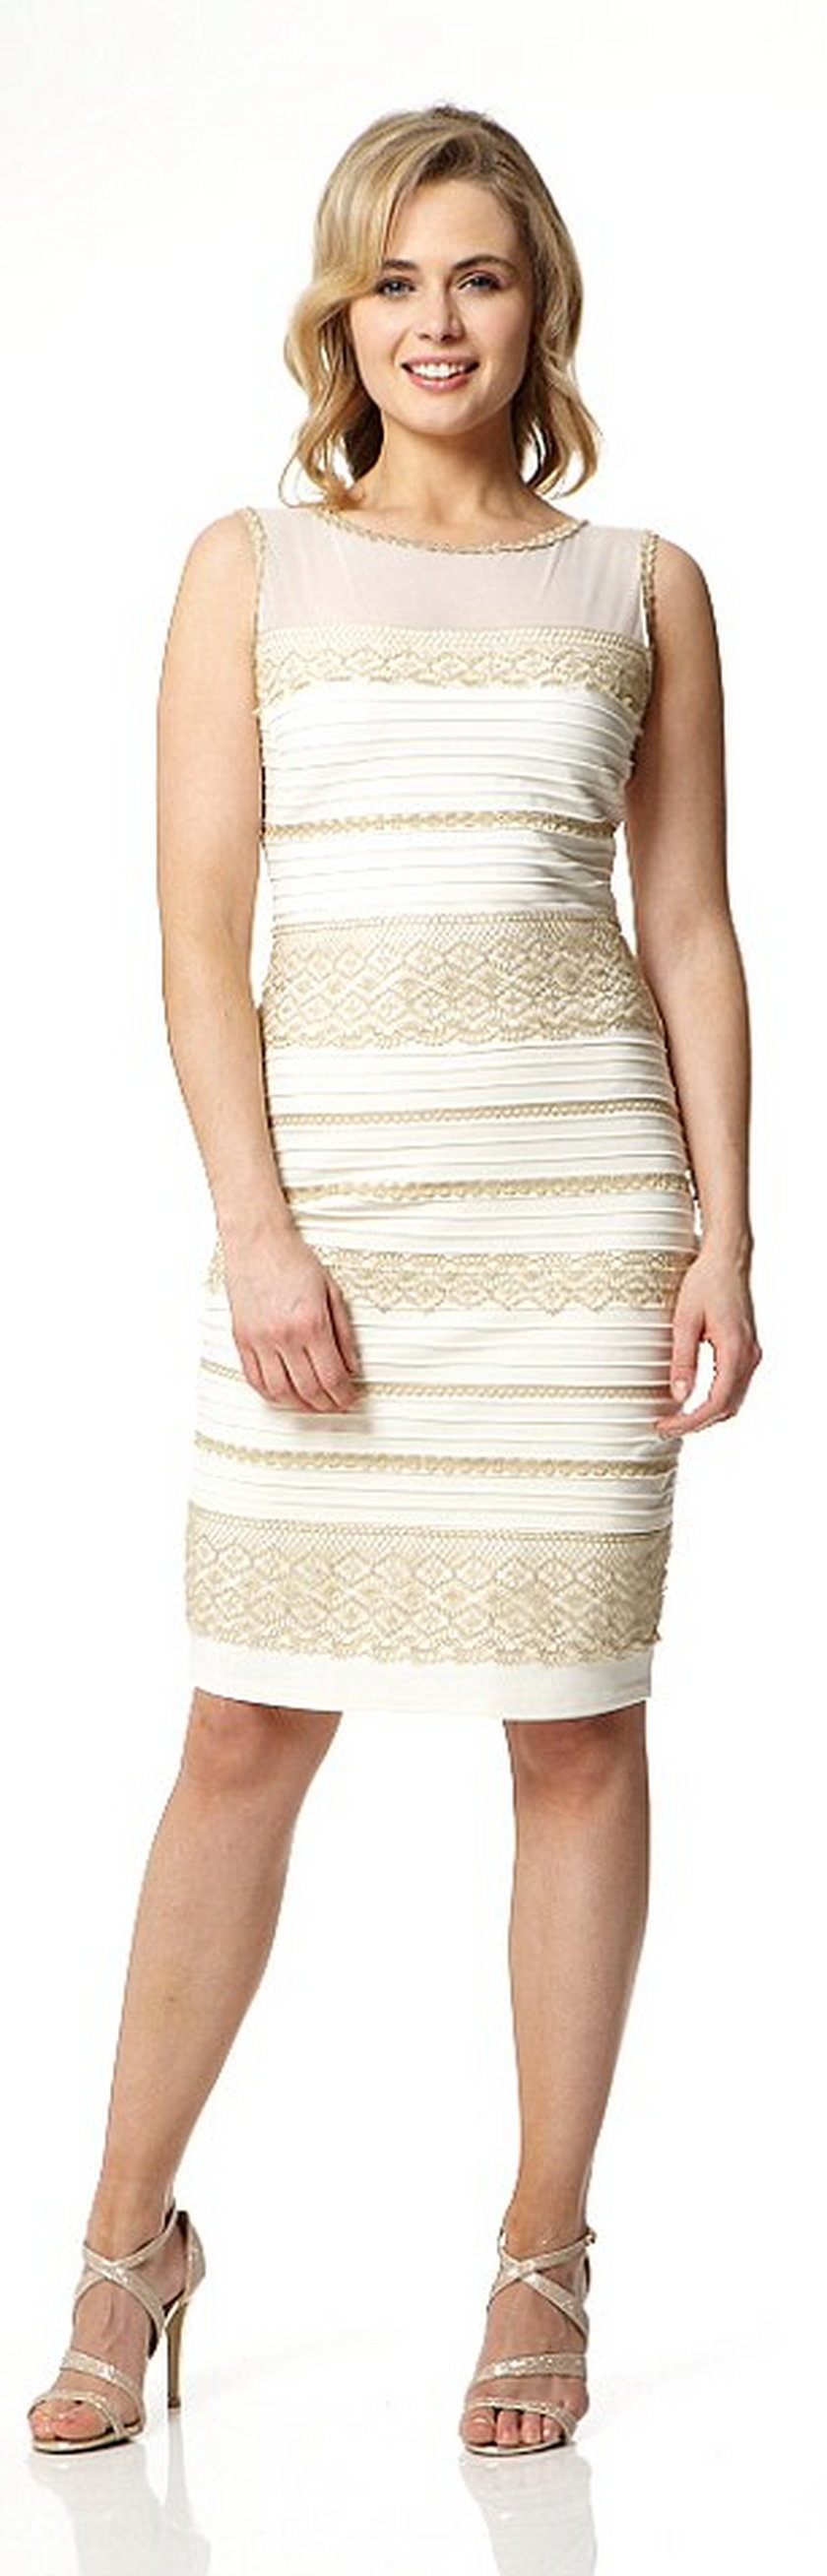 Biało złota sukienka sprzedana za 8 tysięcy